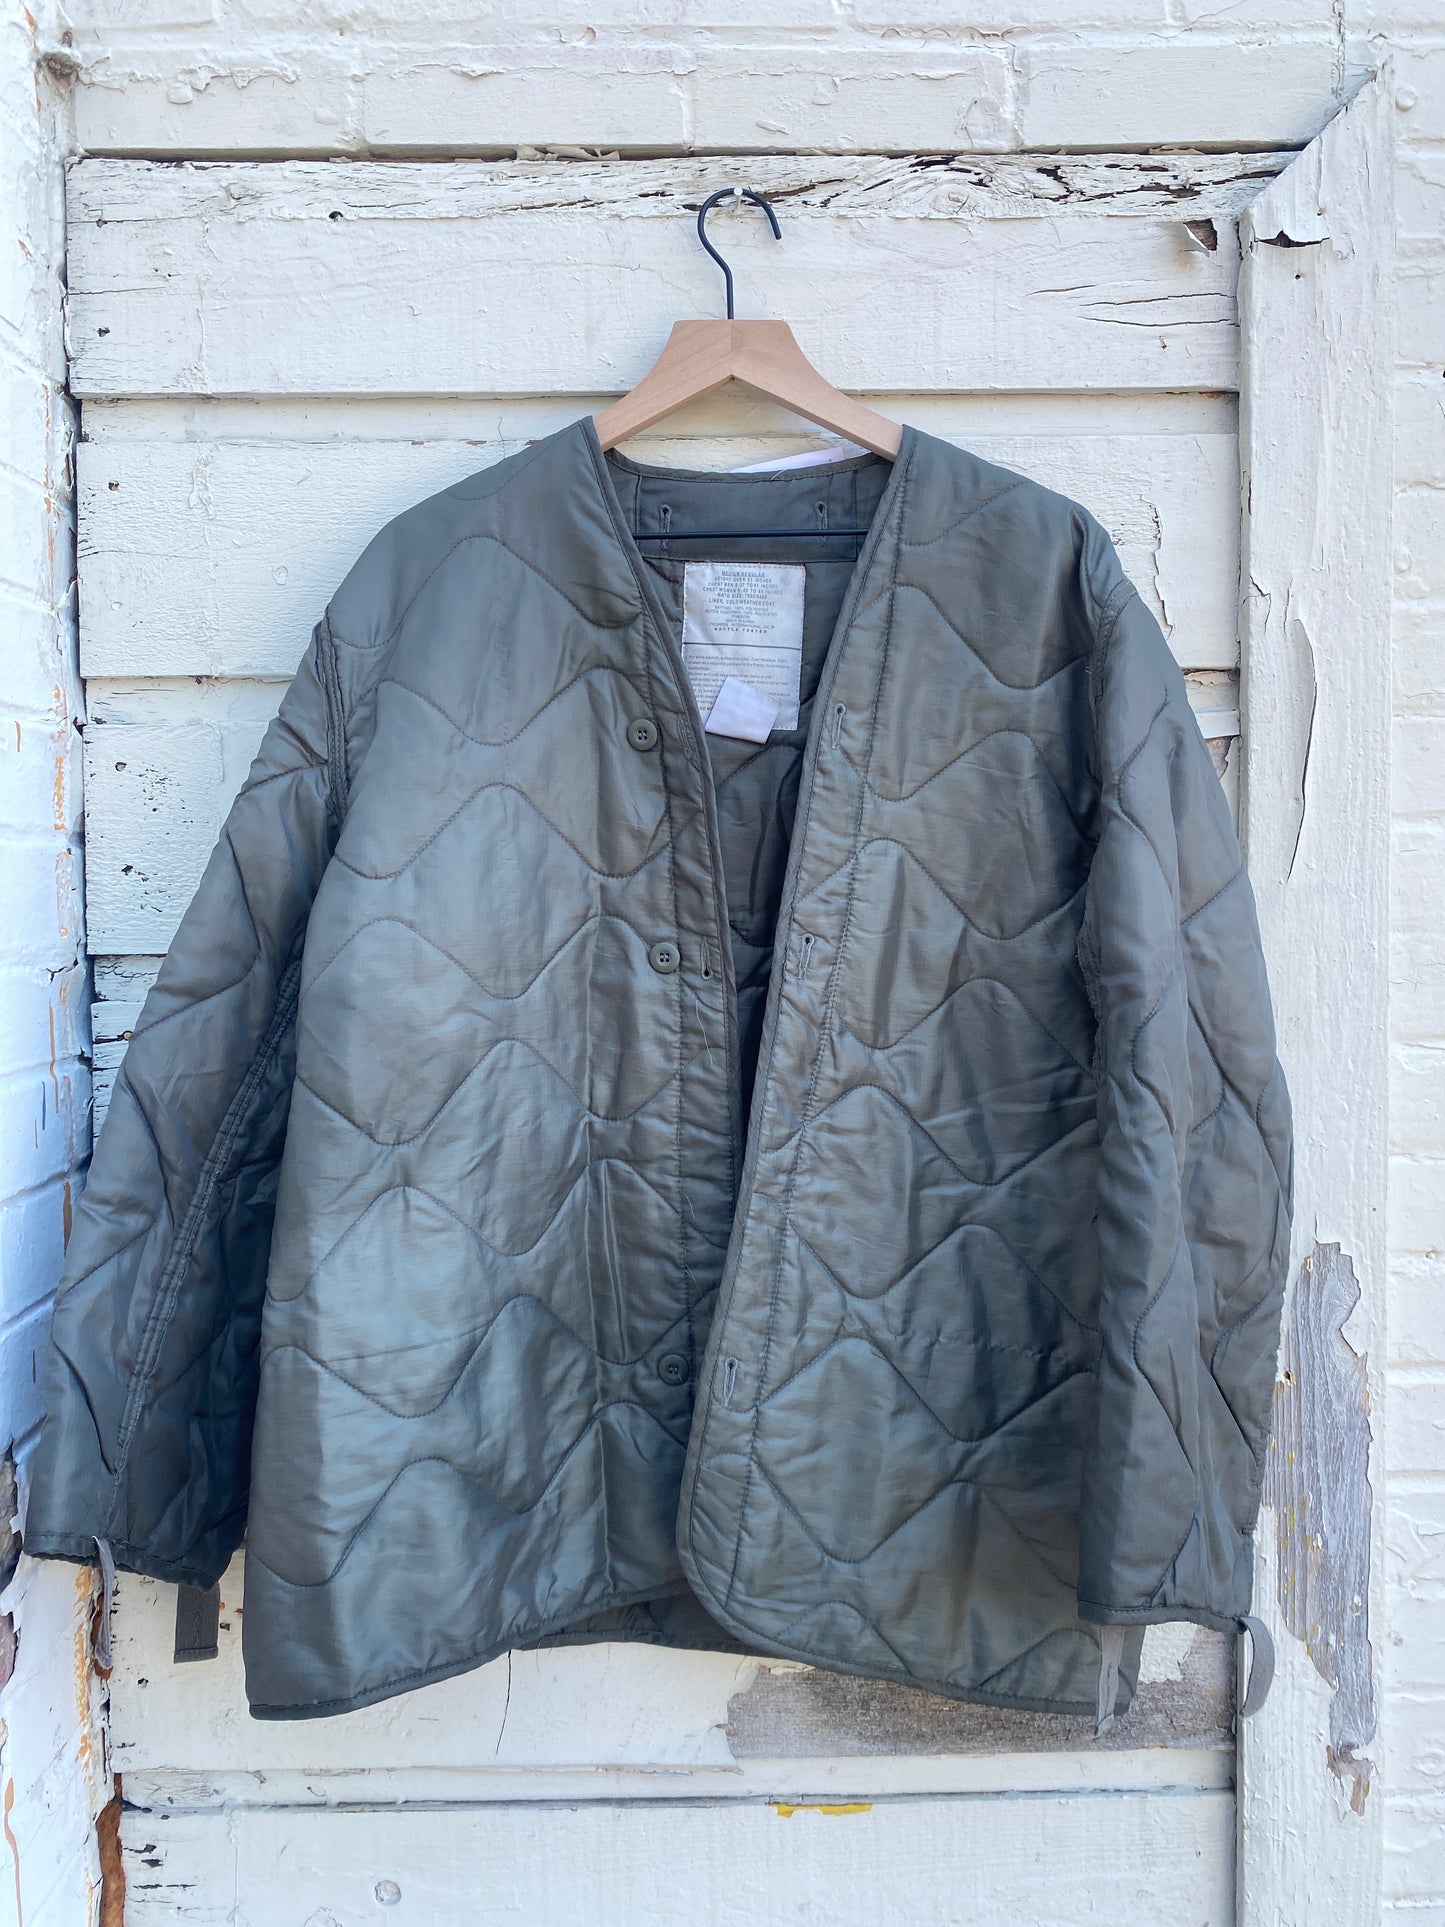 Vintage military style liner jacket medium/large